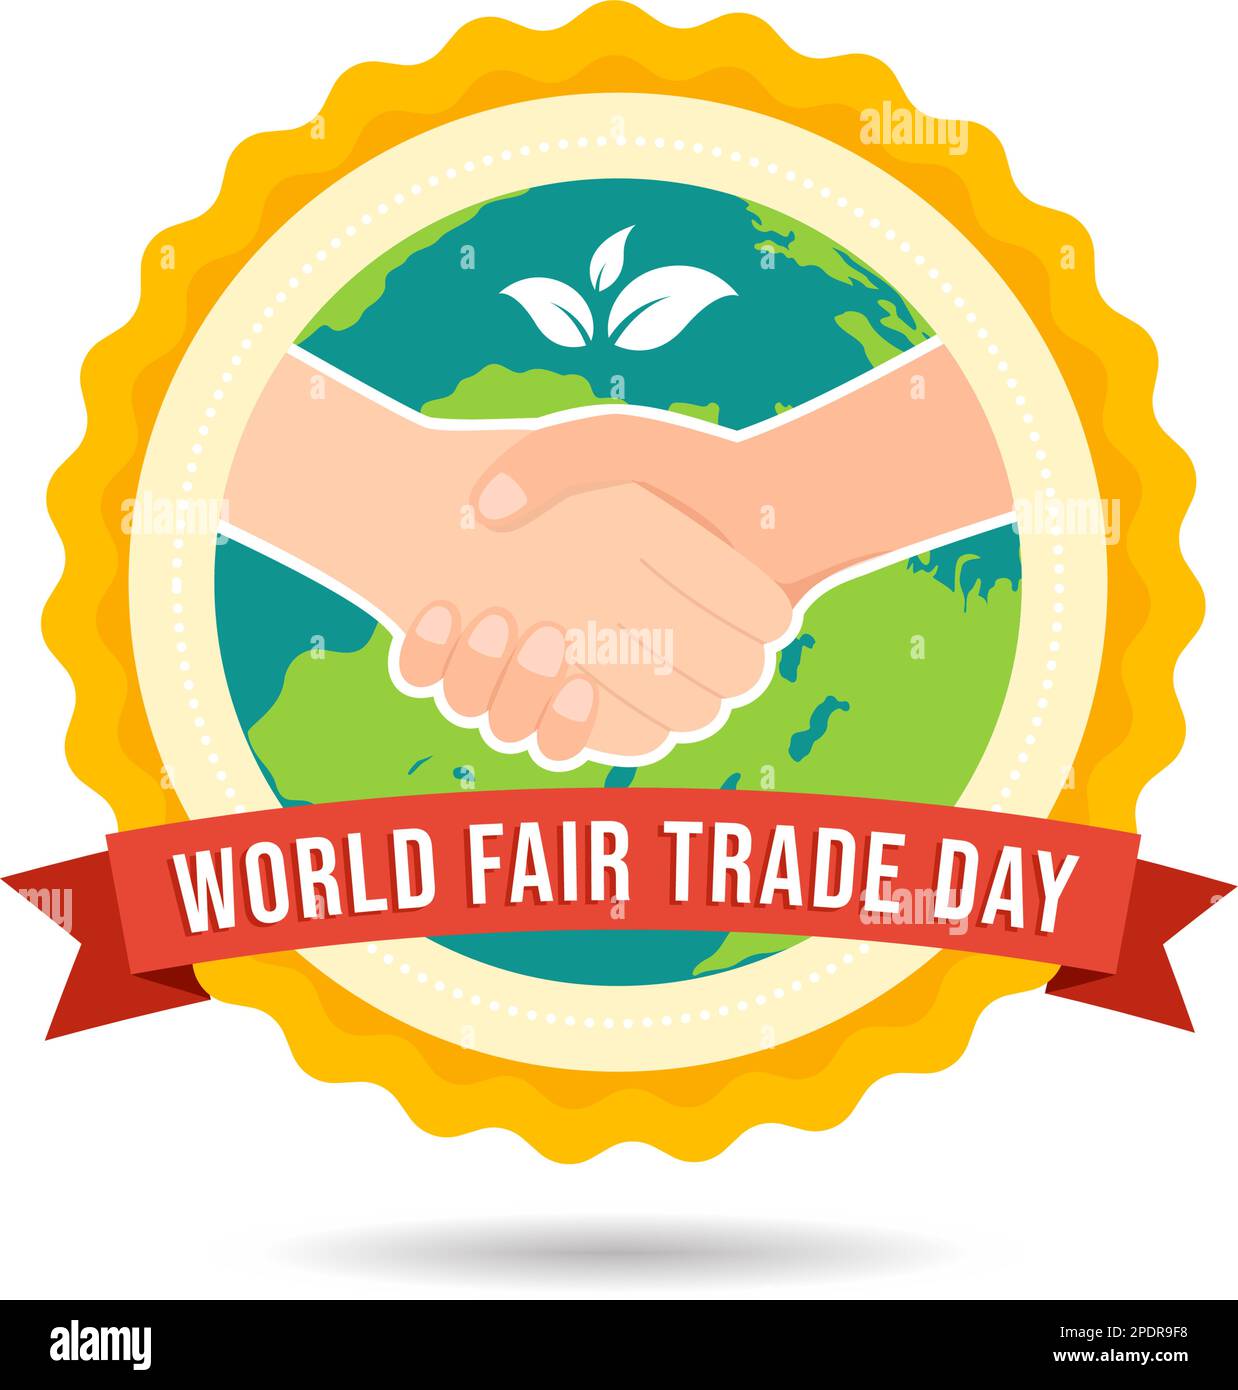 Illustration zum Welttag des fairen Handels mit digitalen Skalen, Climate Justice und Planet Economic in flachem Cartoon, handgezeichnet für Landing-Page-Vorlagen Stock Vektor